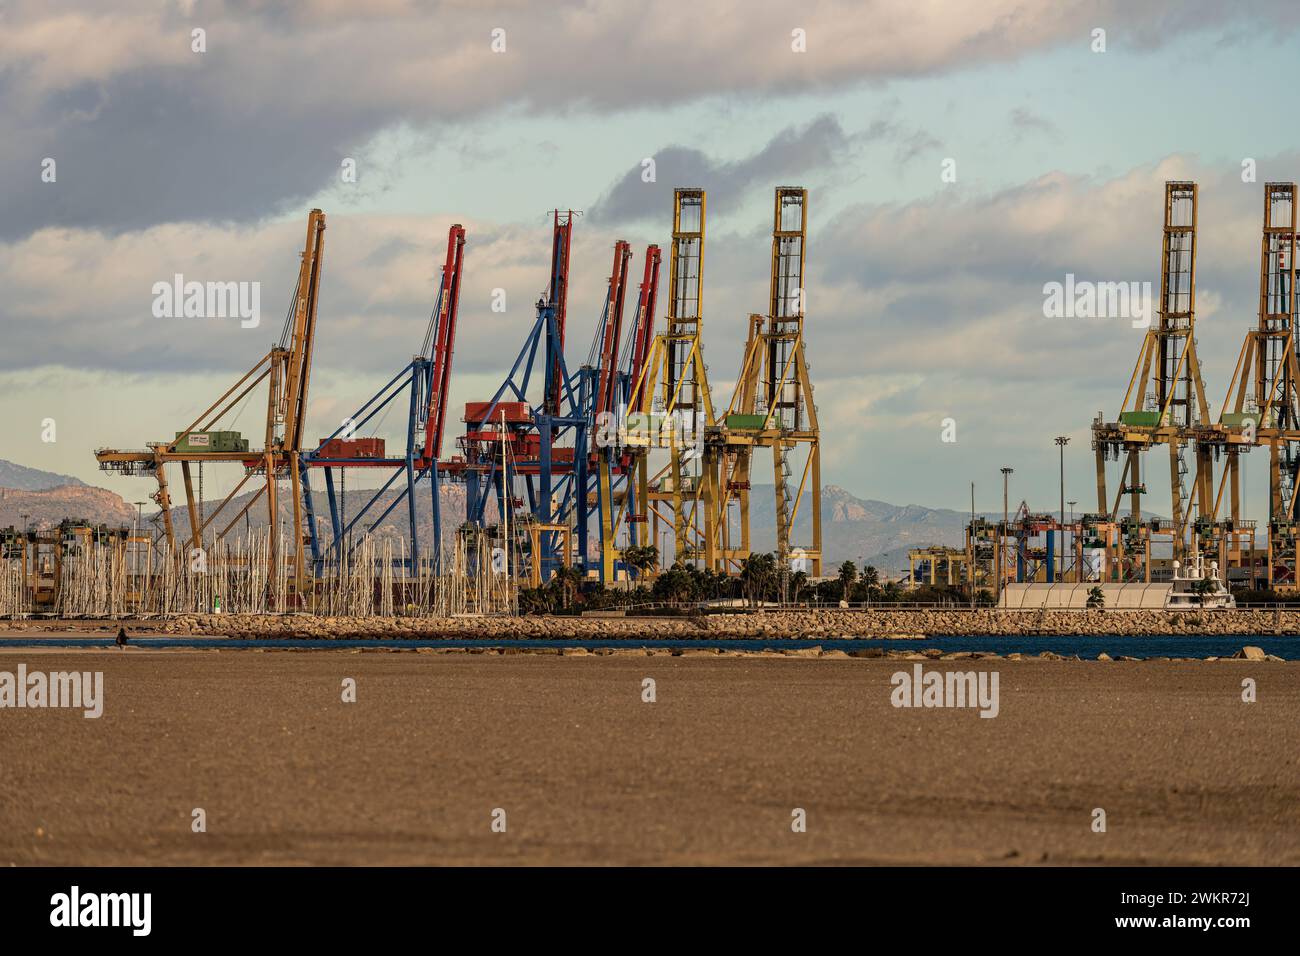 Ein geschäftiger Industriehafen zeigt die Aktivität des Handels mit Containerkränen, die bereit sind, Fracht von Containerschiffen zu be- und entladen. Stockfoto